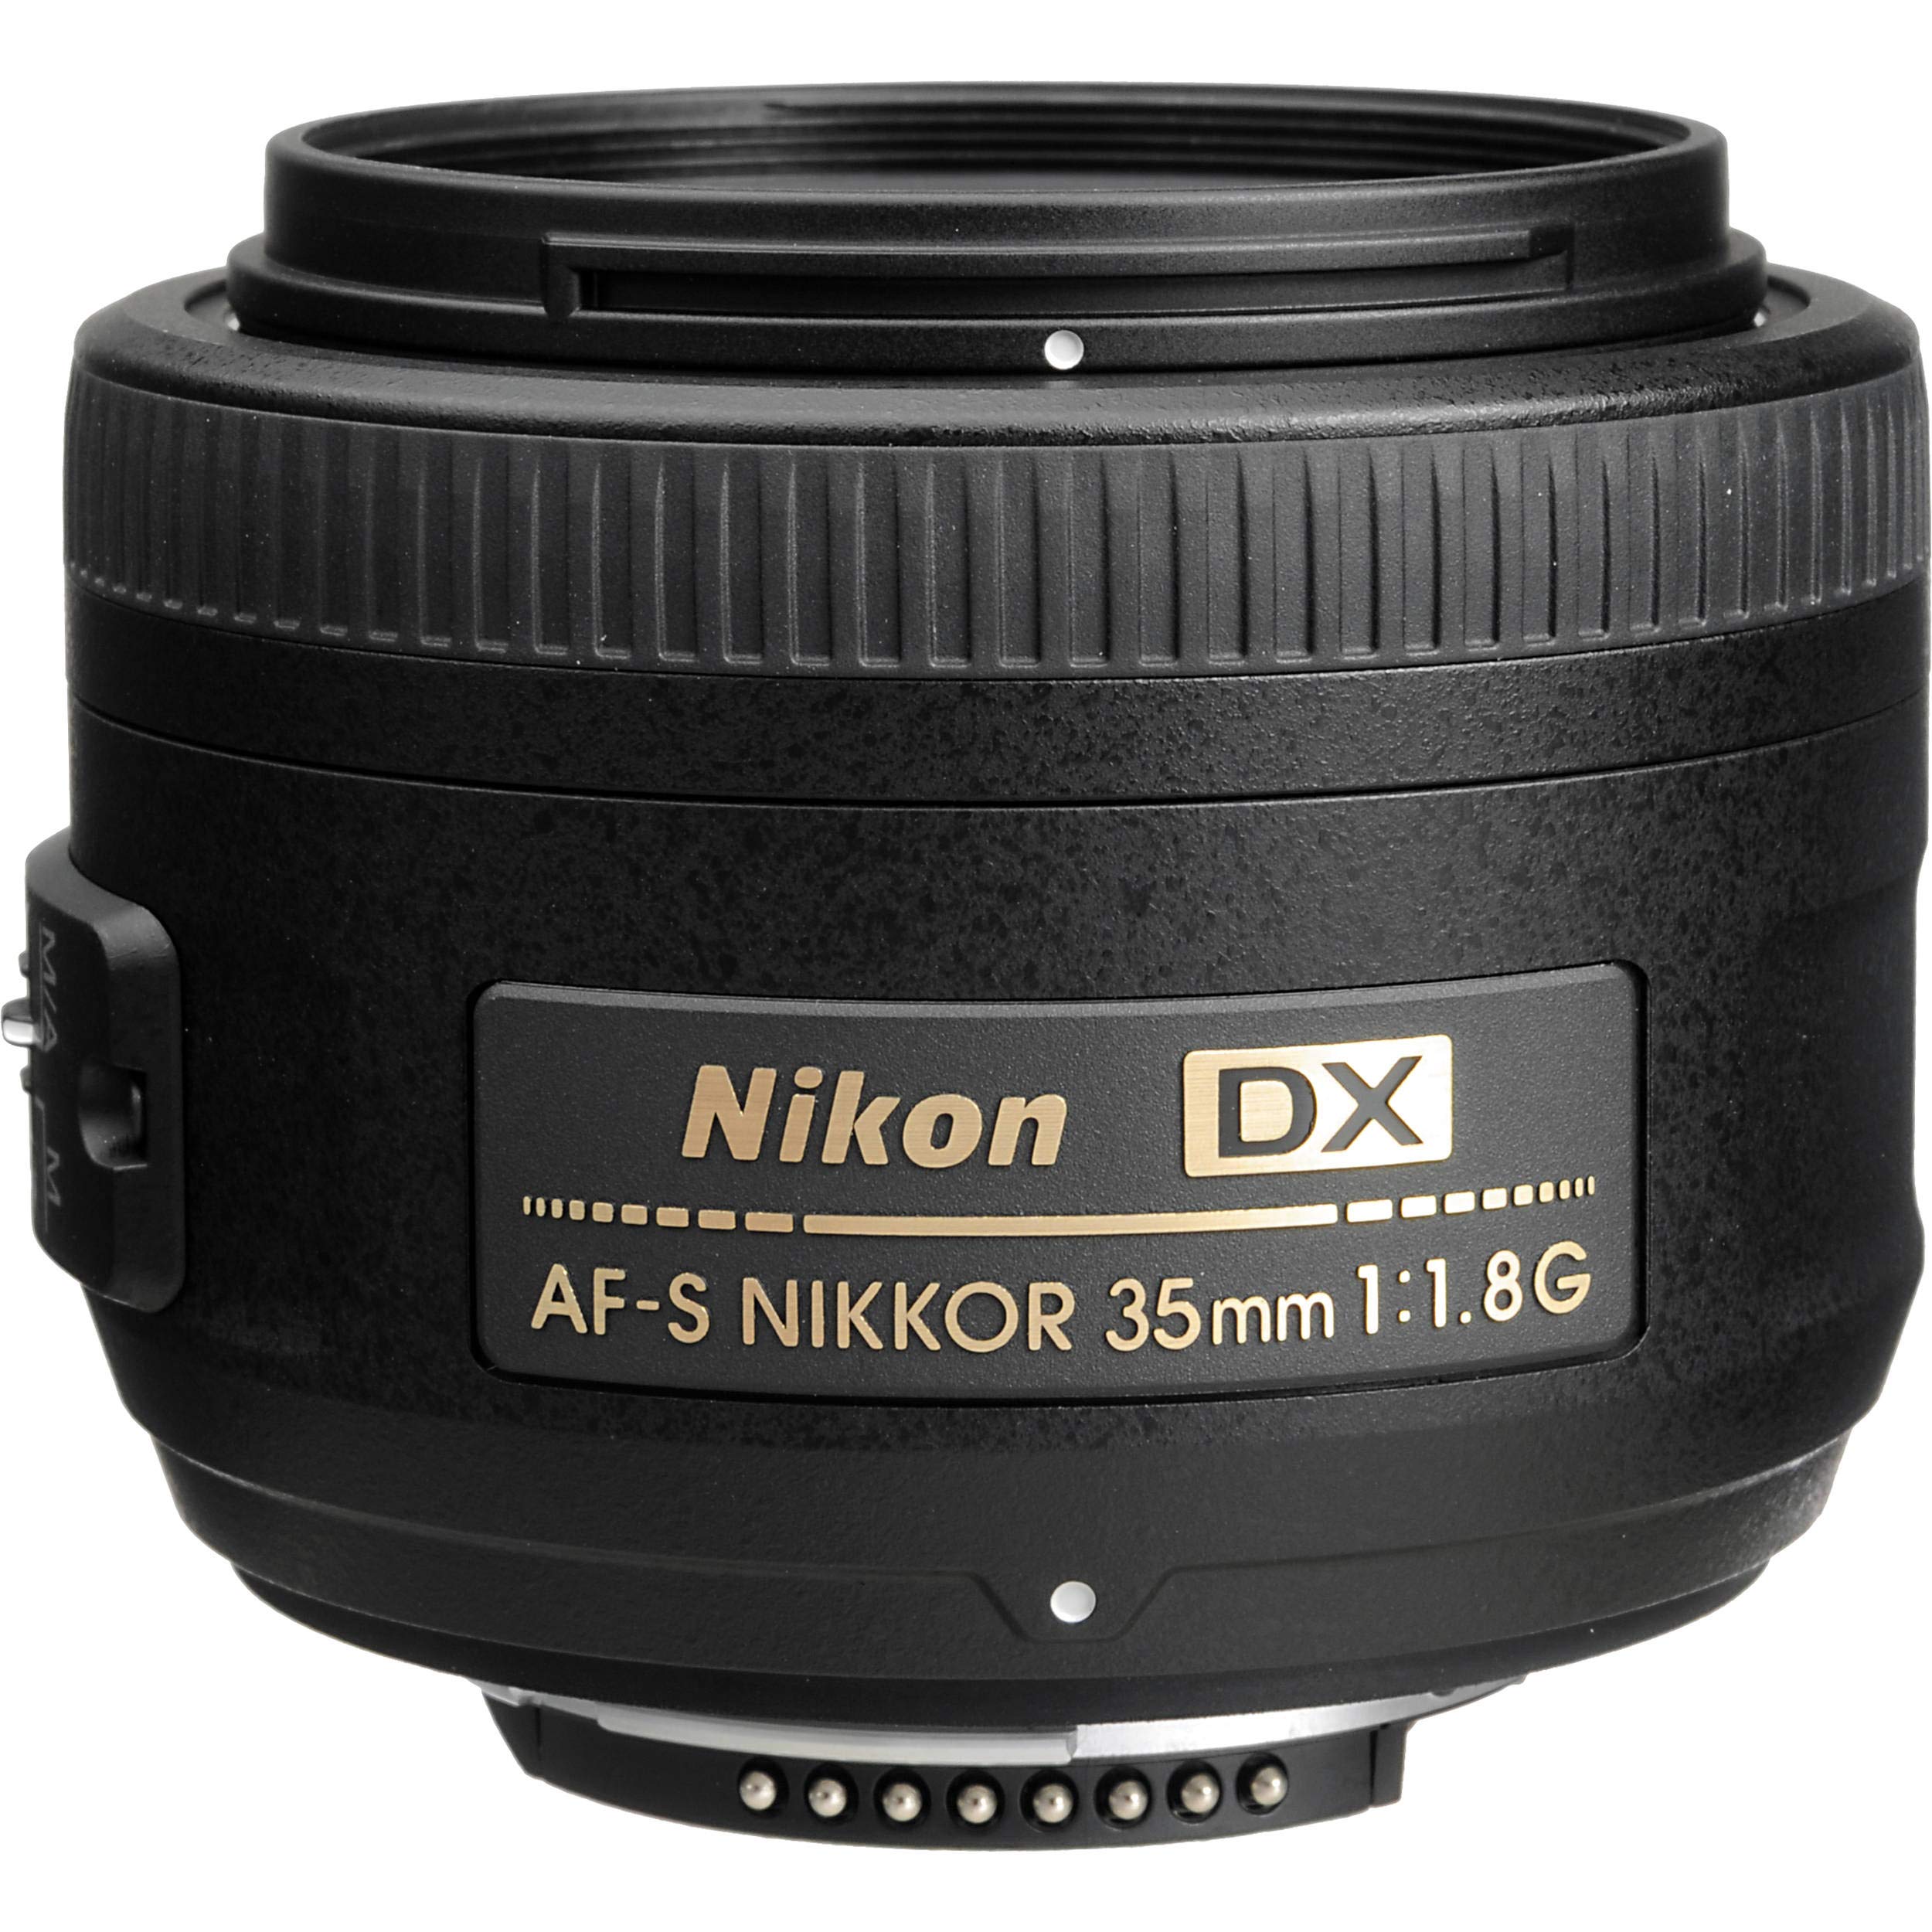 Nikon AF-S DX NIKKOR 35mm f/1.8G Lens + Vivitar Graduated Color Filter Kit + Cleaning Kit